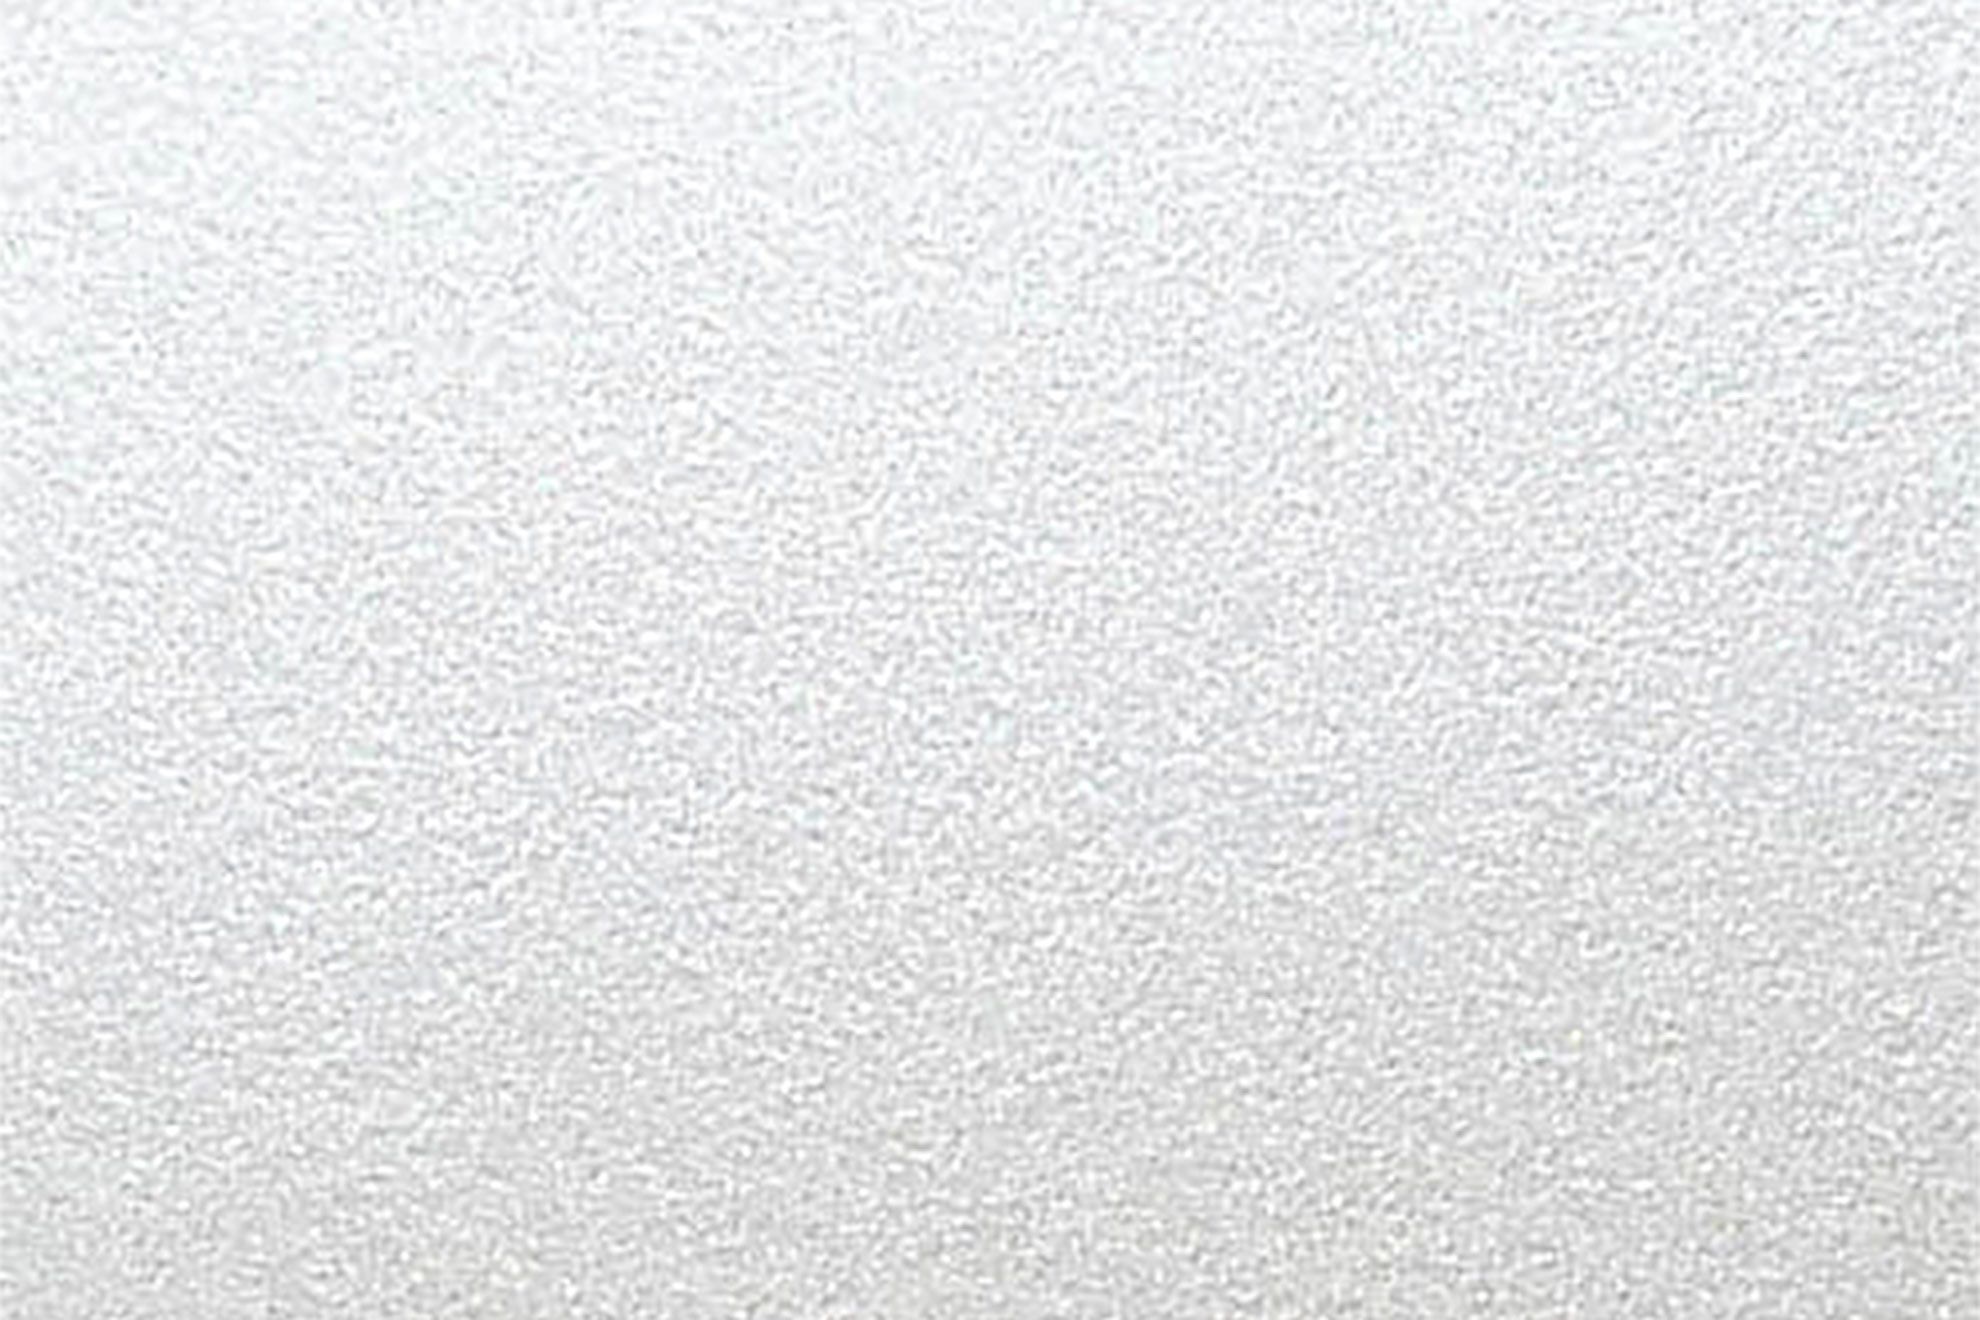 Sirio Pearl Ice White, strip, taglio quadro: Cartoncino naturale colorato certificato FSC. Superficie liscia perlescente. Produttore: Fedrigoni